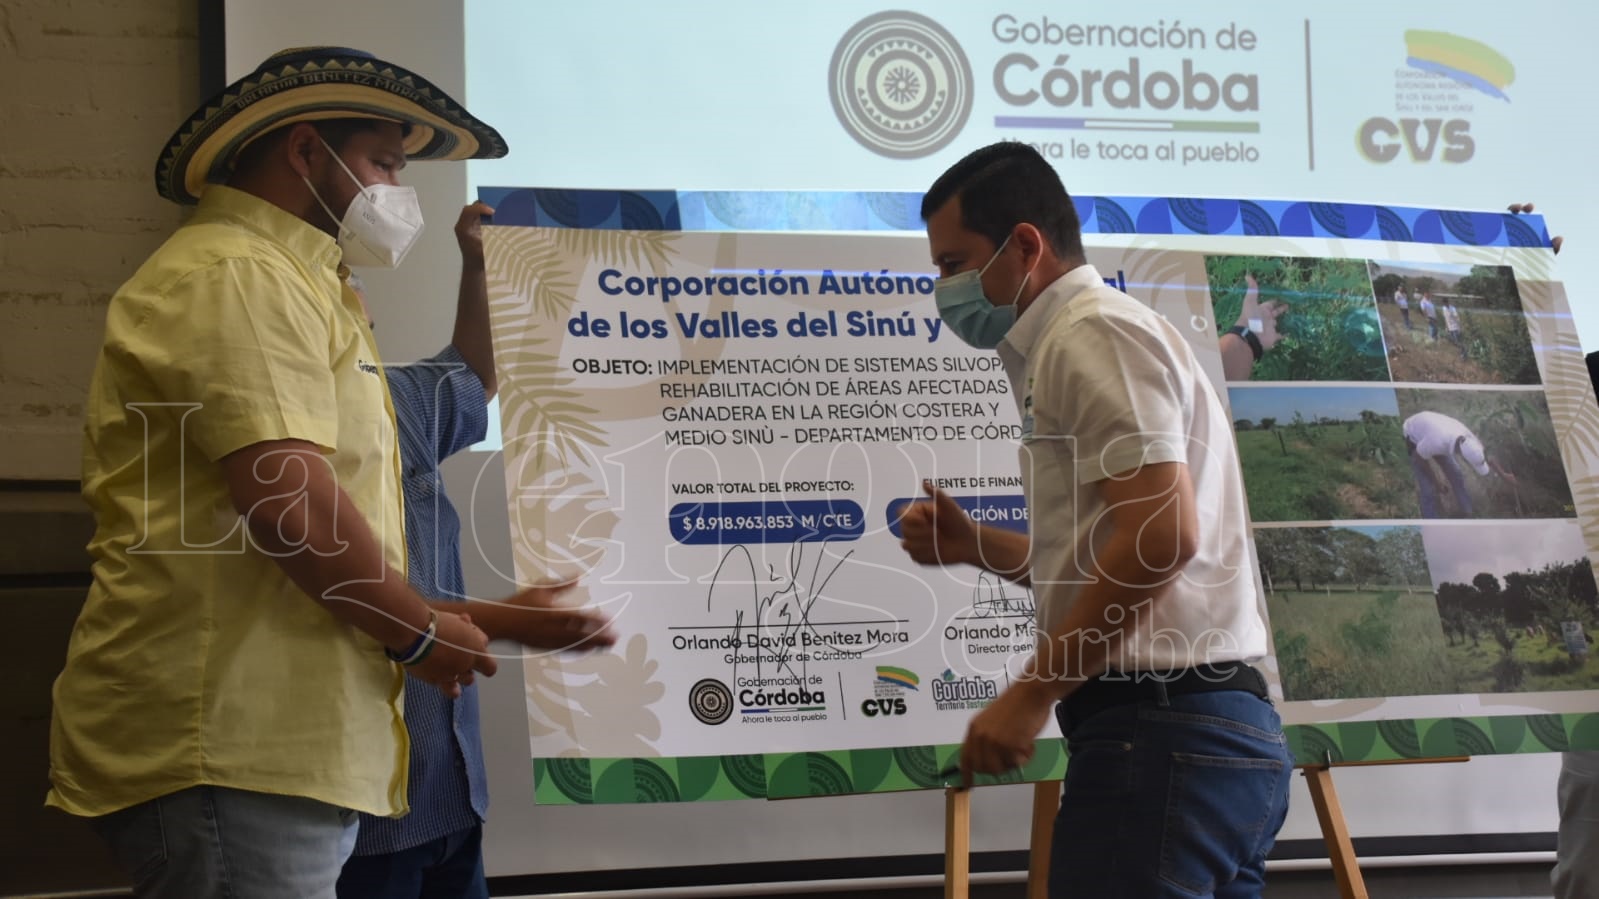 Gobernación de Córdoba y CVS firman convenio para rehabilitar áreas afectadas por la actividad ganadera